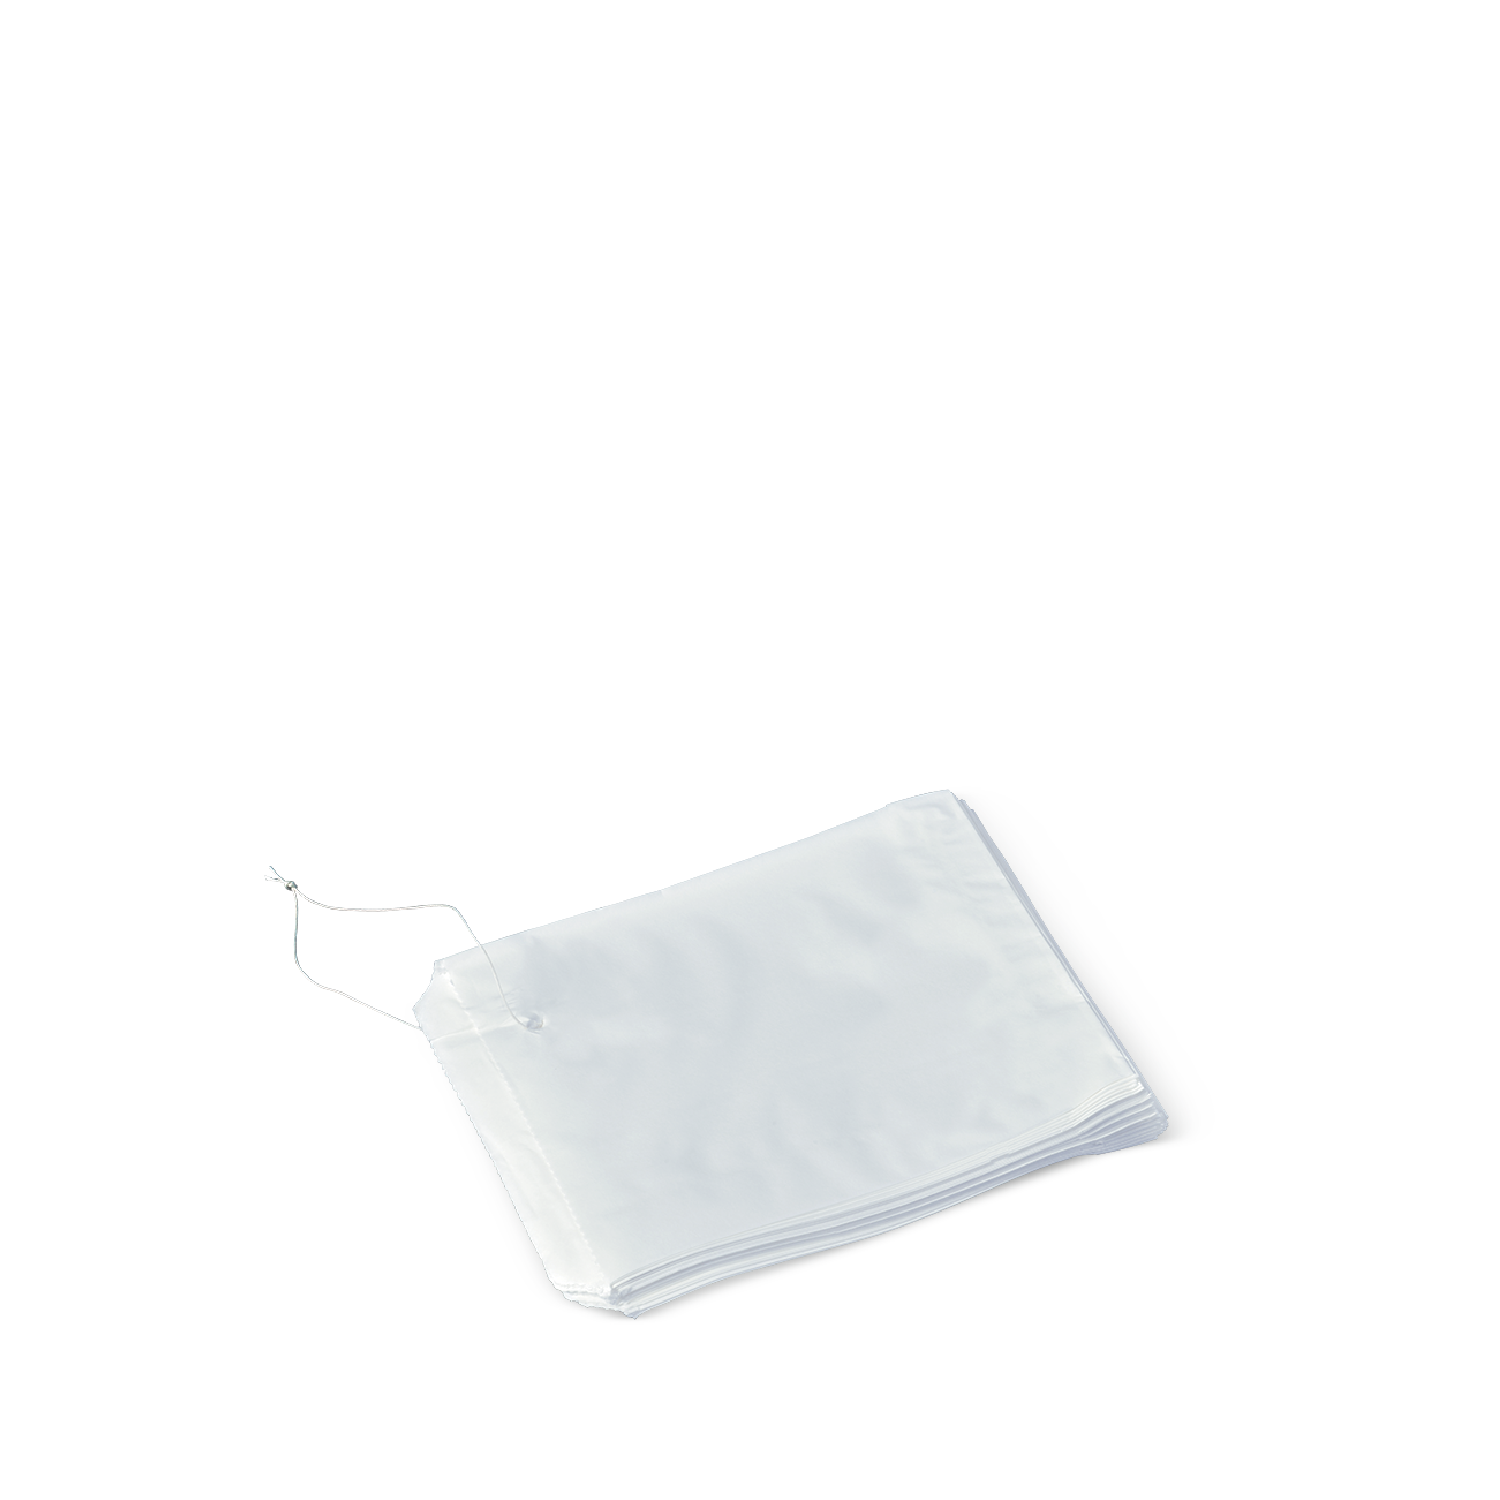 Detpak Detpak Flat Paper Bag Strung White #4 - PK of 500 Disposable Food Packaging  